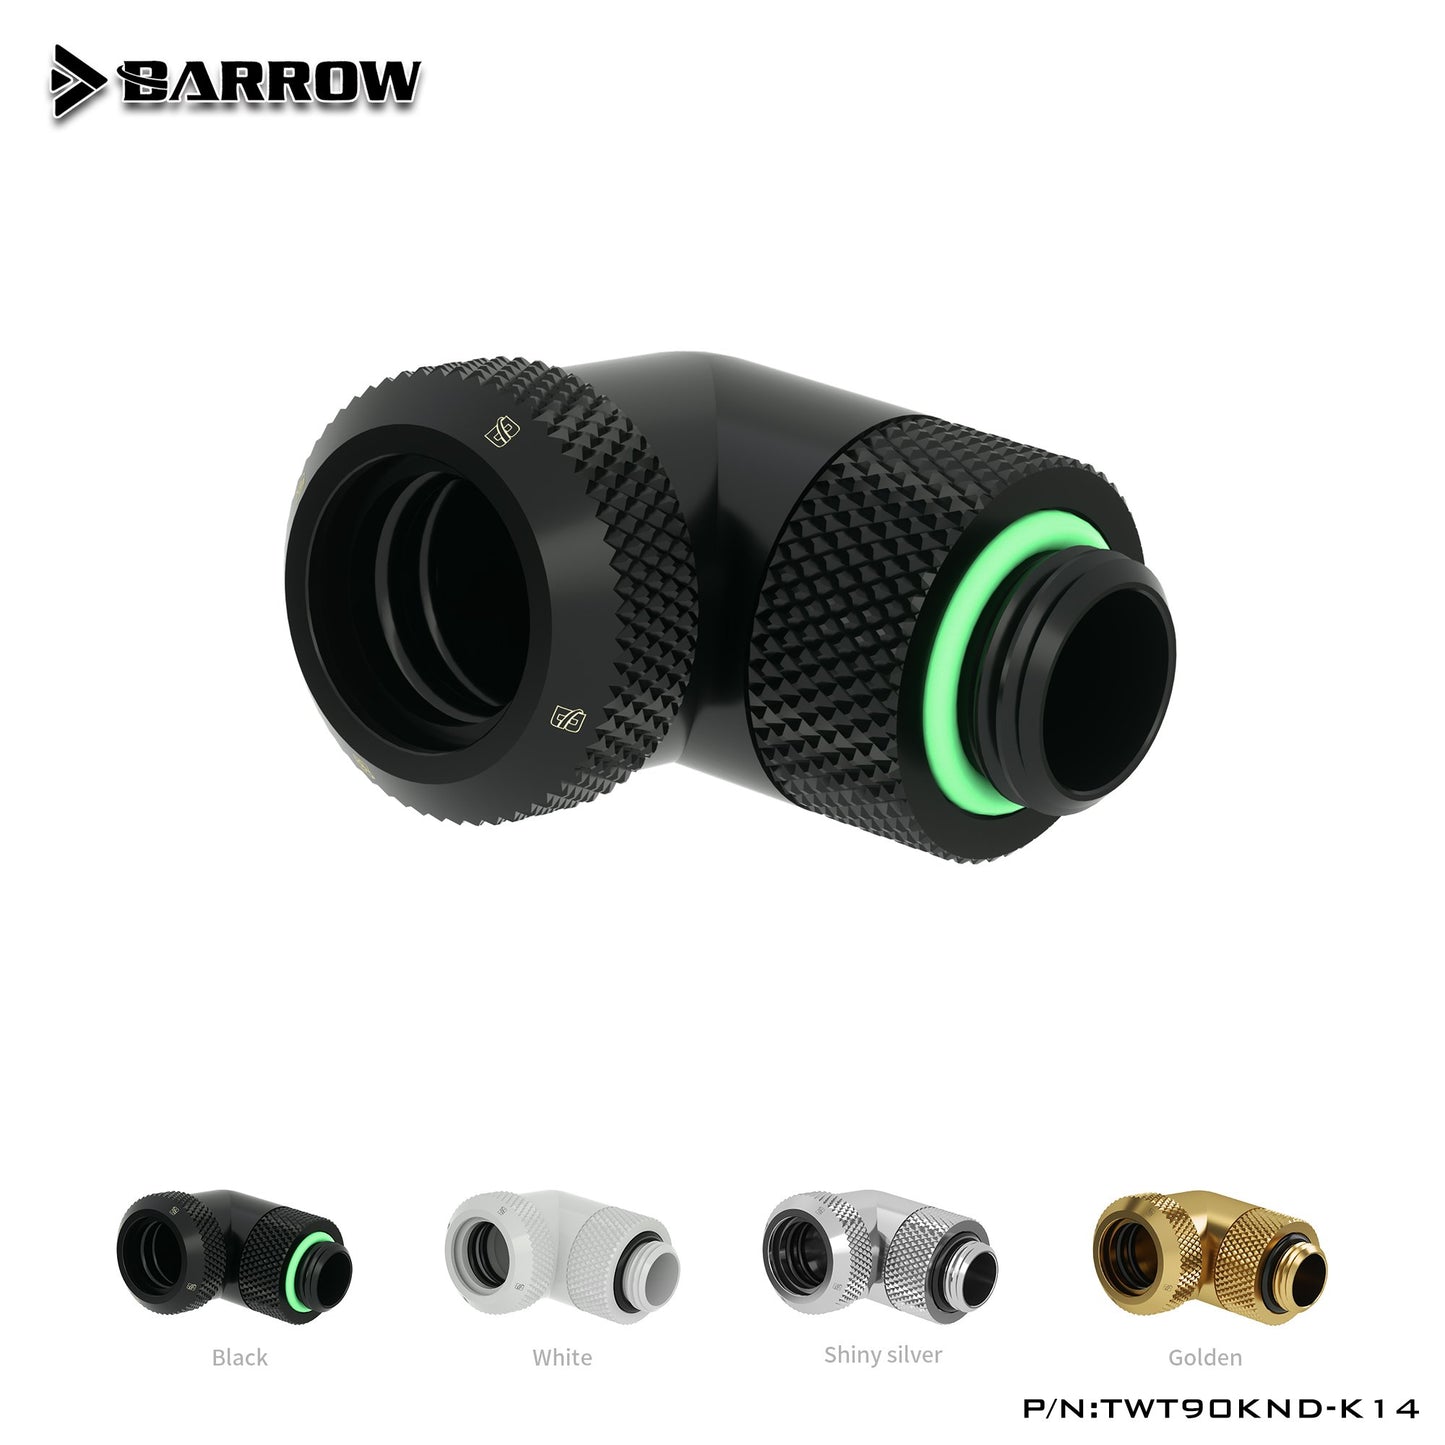 Barrow TWT90KND-K12/TWT90KND-K14, raccords de tubes durs rotatifs à 90 degrés, adaptateurs G1/4 pour tubes durs OD12mm/14mm